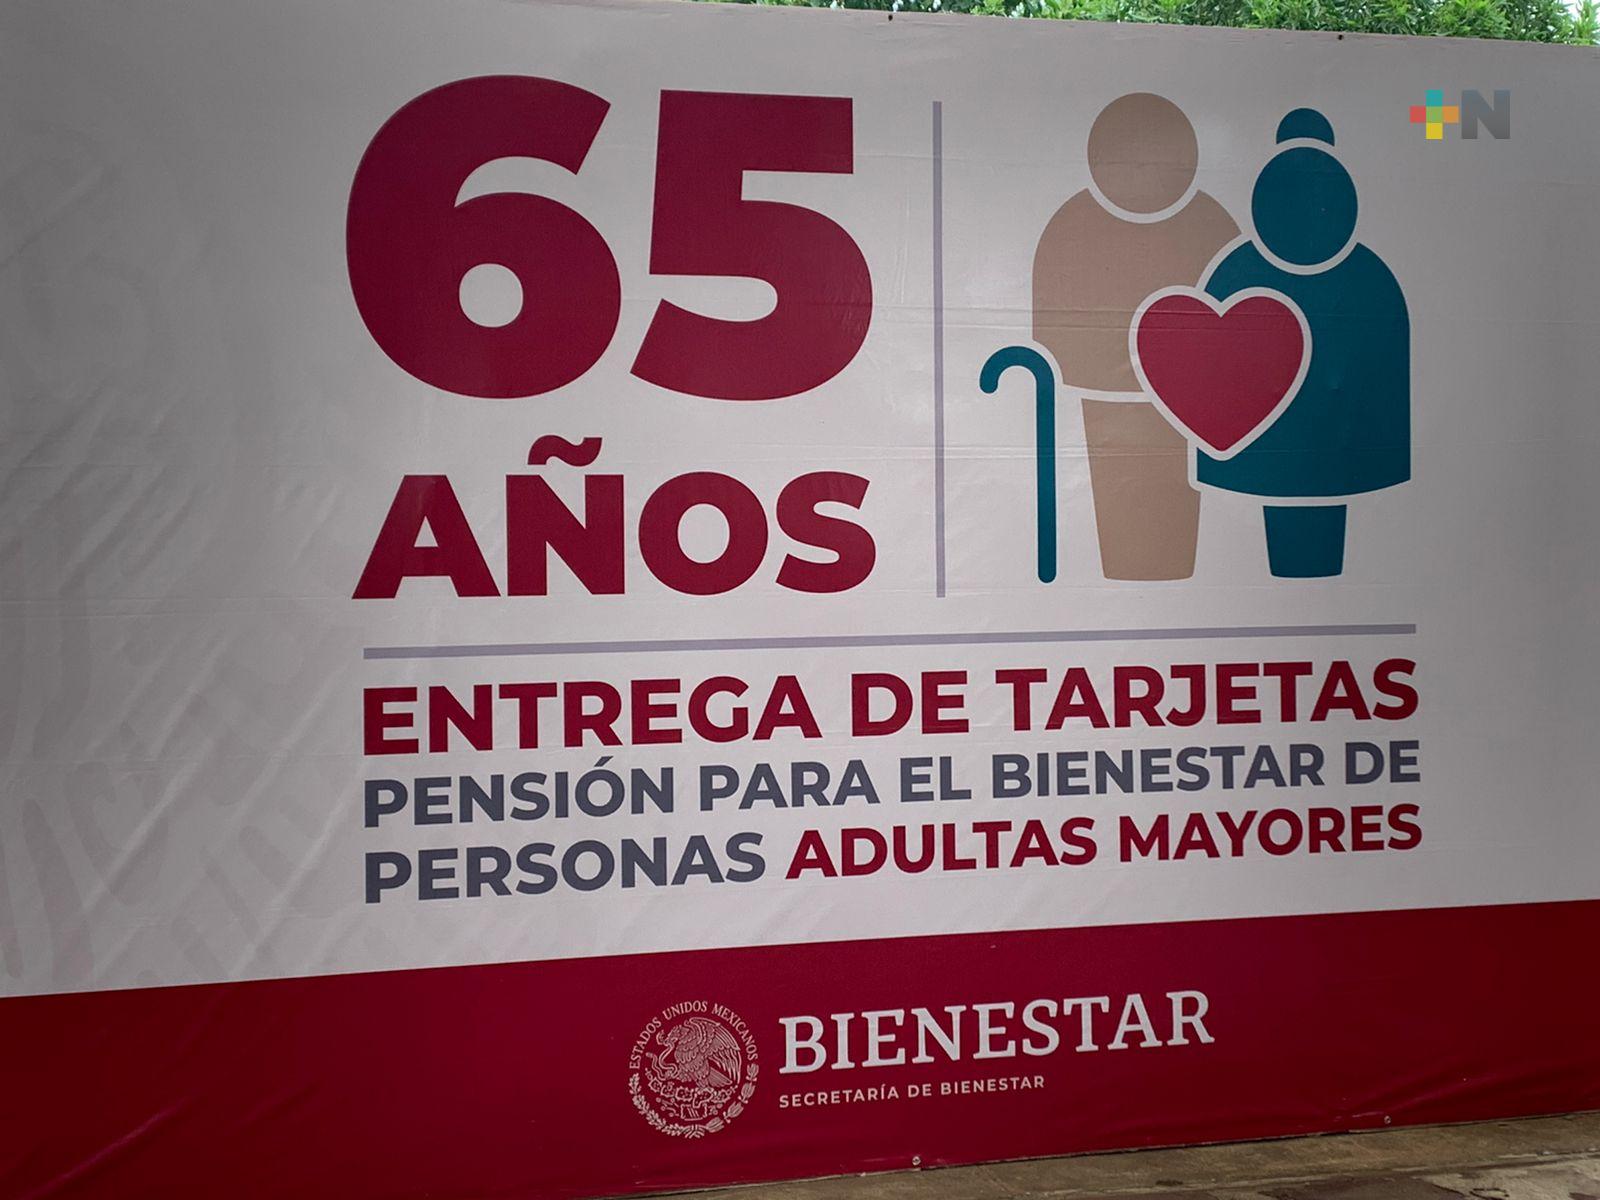 Entregan tarjetas de la Pensión para el Bienestar en el municipio de Veracruz